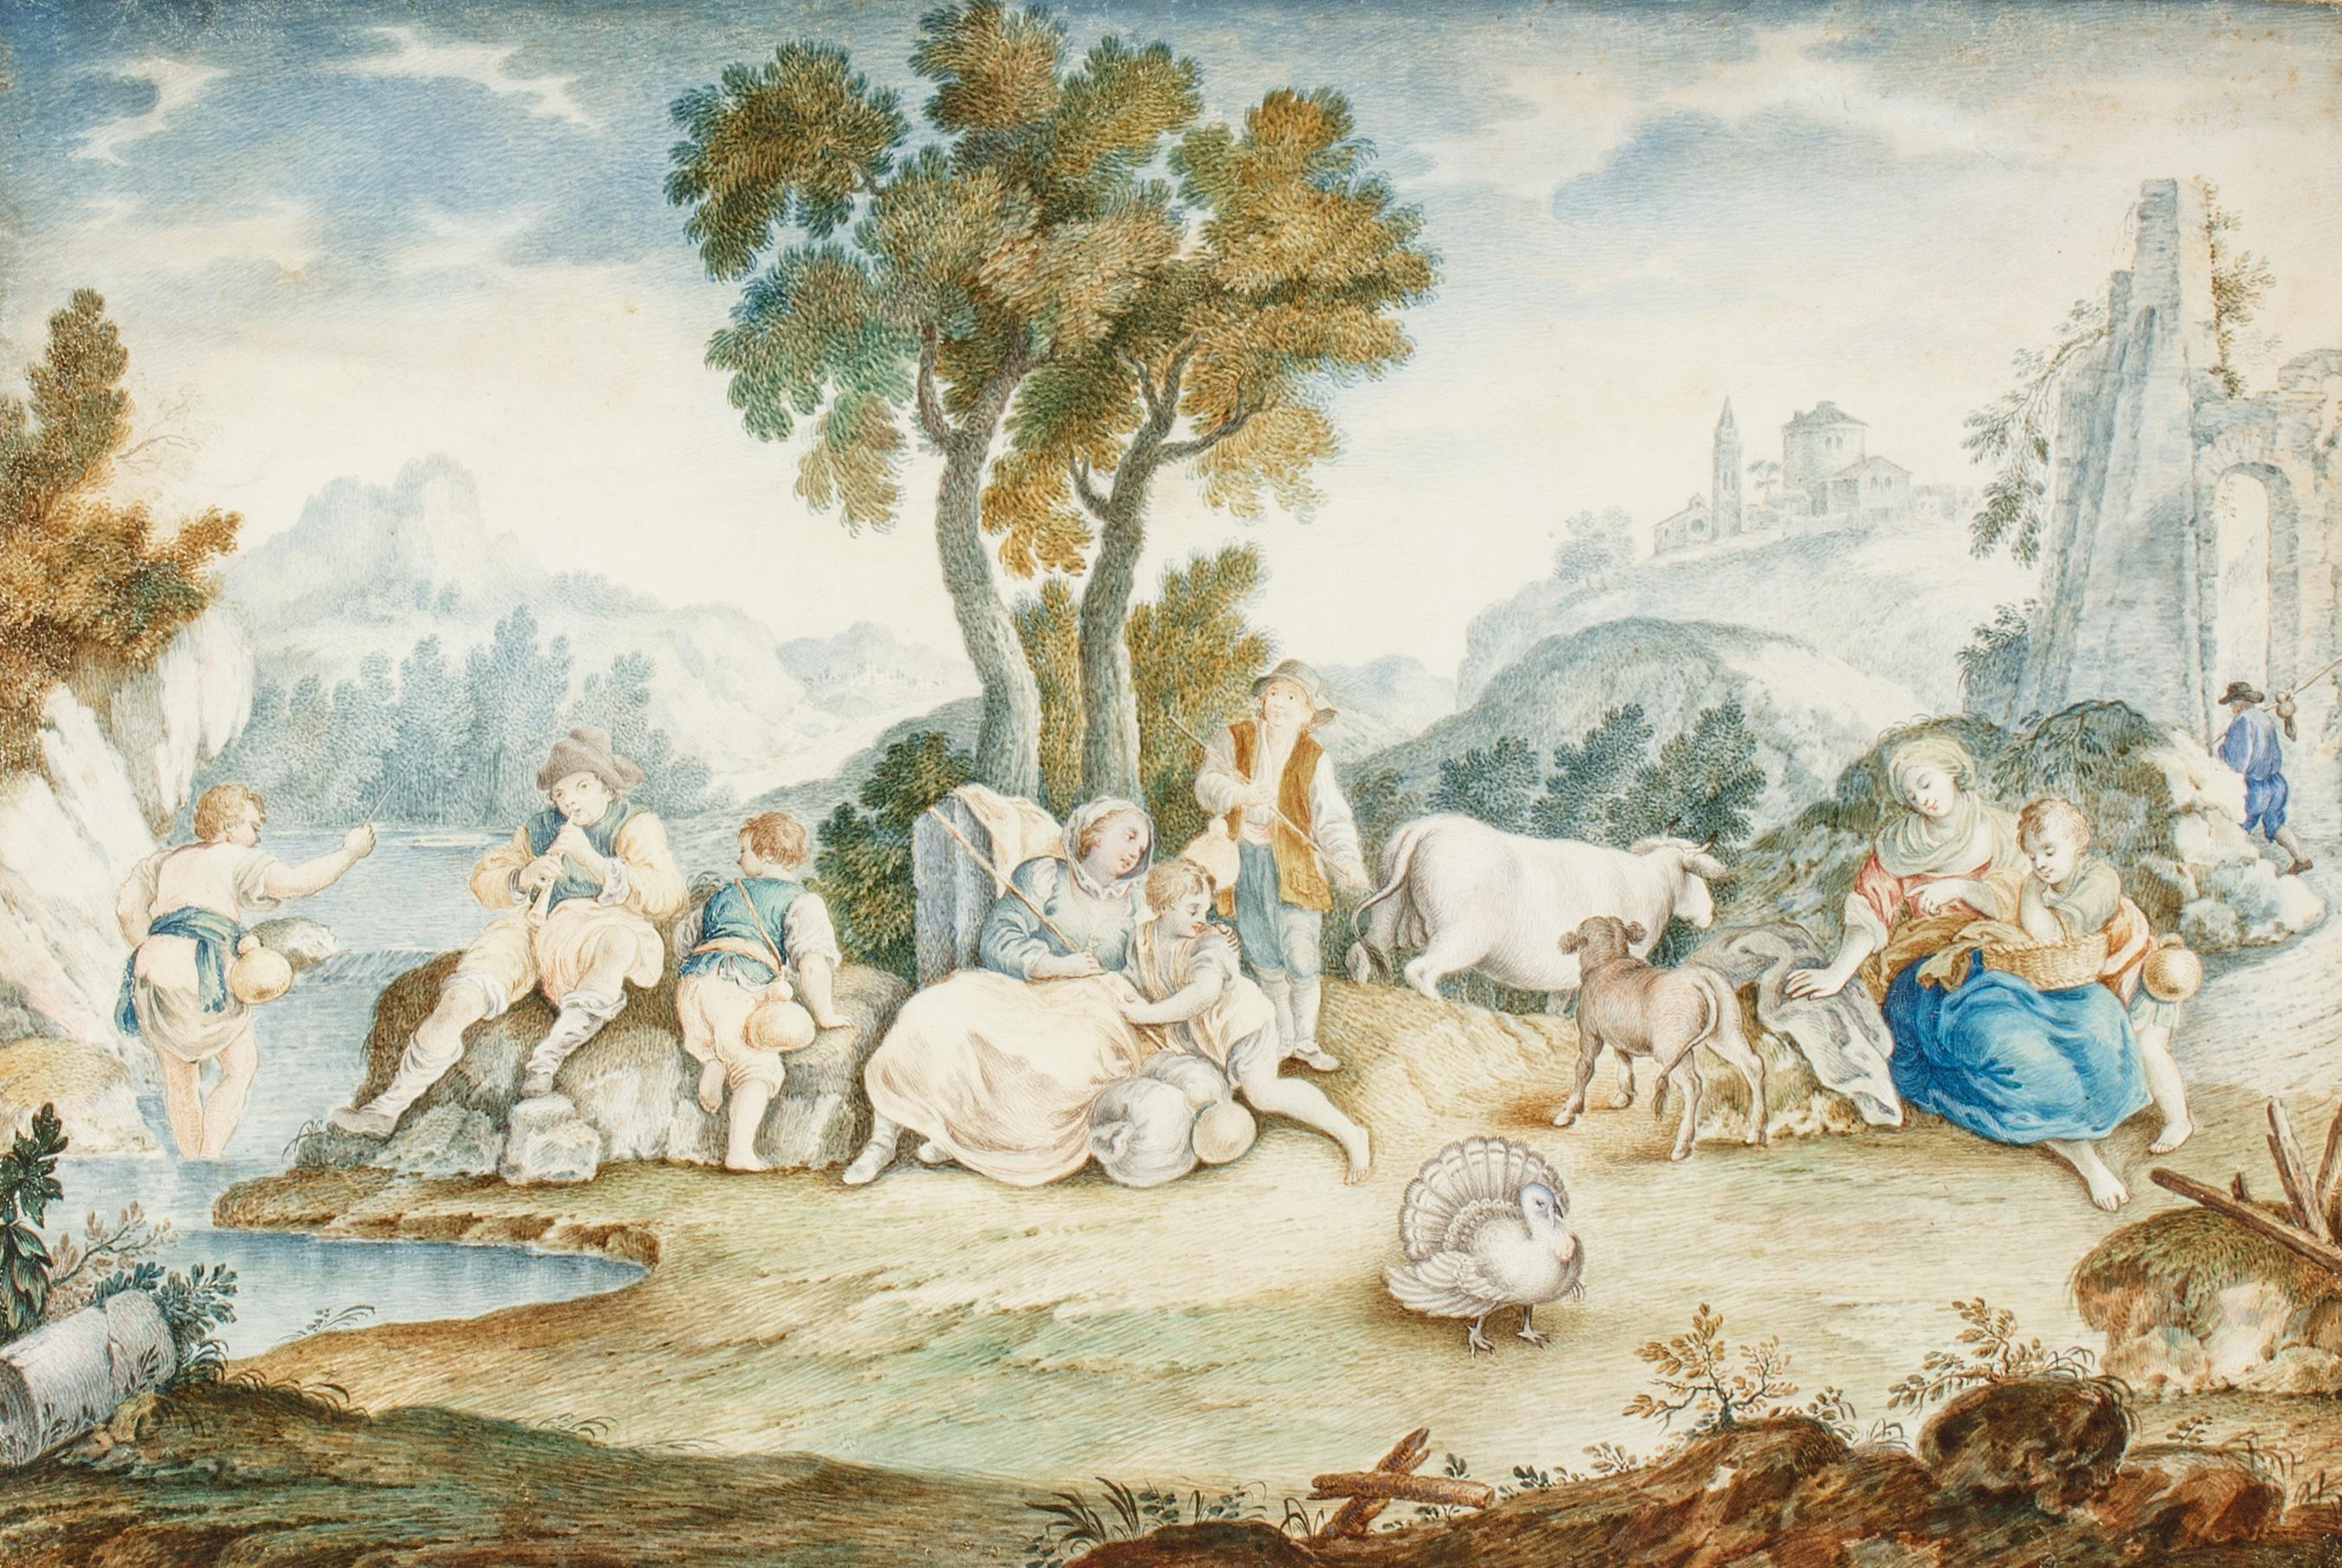 Scène pastorale européenne sur Vellum. Probablement le XVIIIe siècle - Art de Unknown